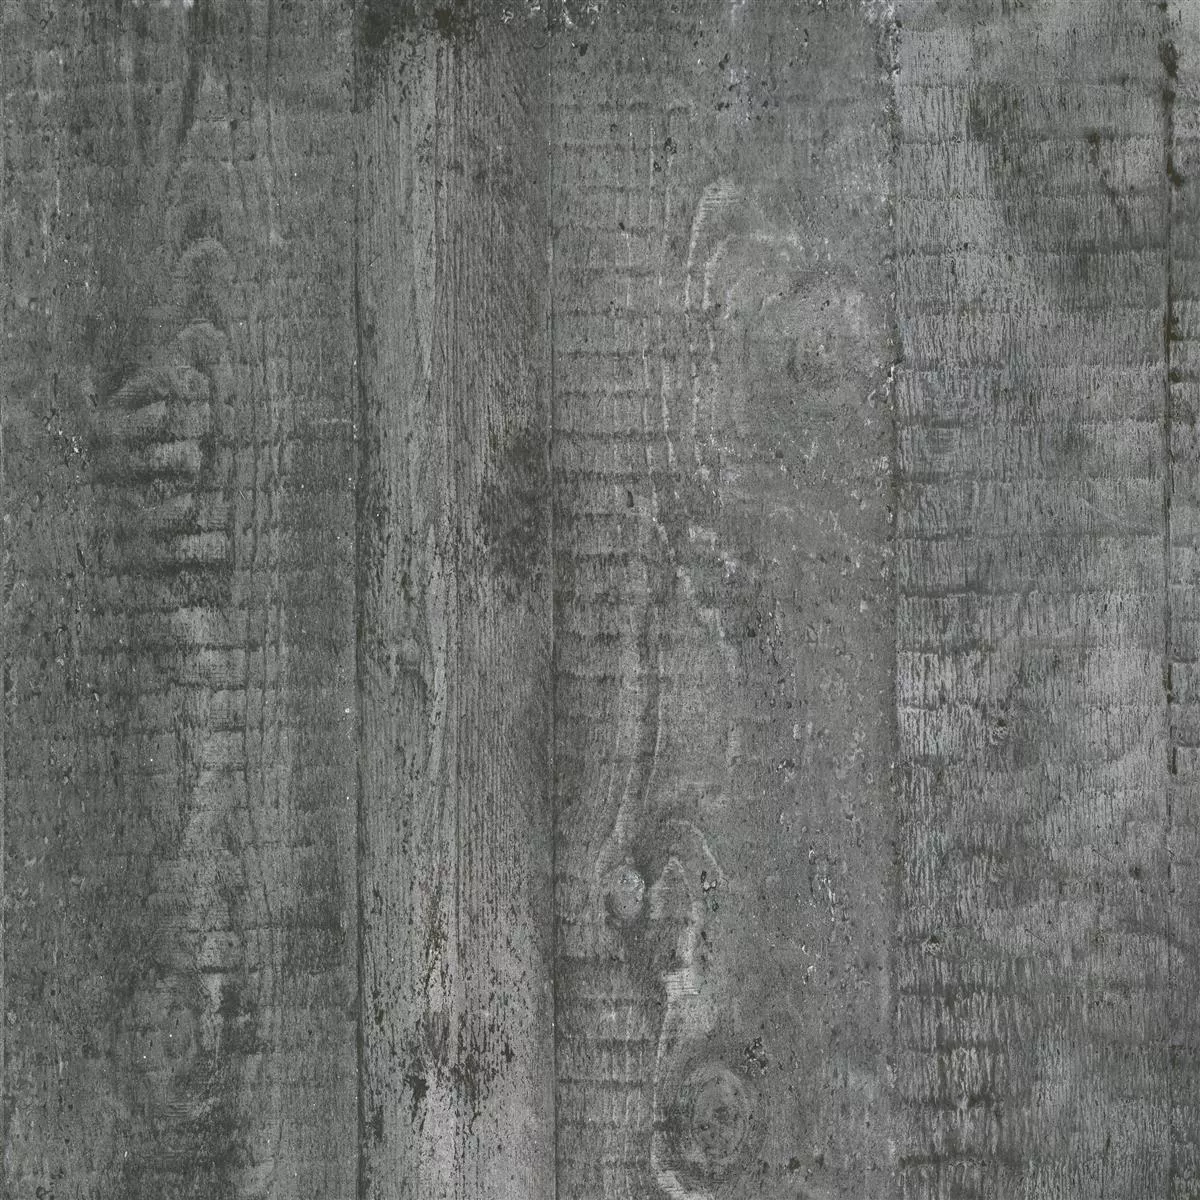 Próbka Płytki Podłogowe Gorki Wygląd Drewna 60x60cm Oszklony Graphit